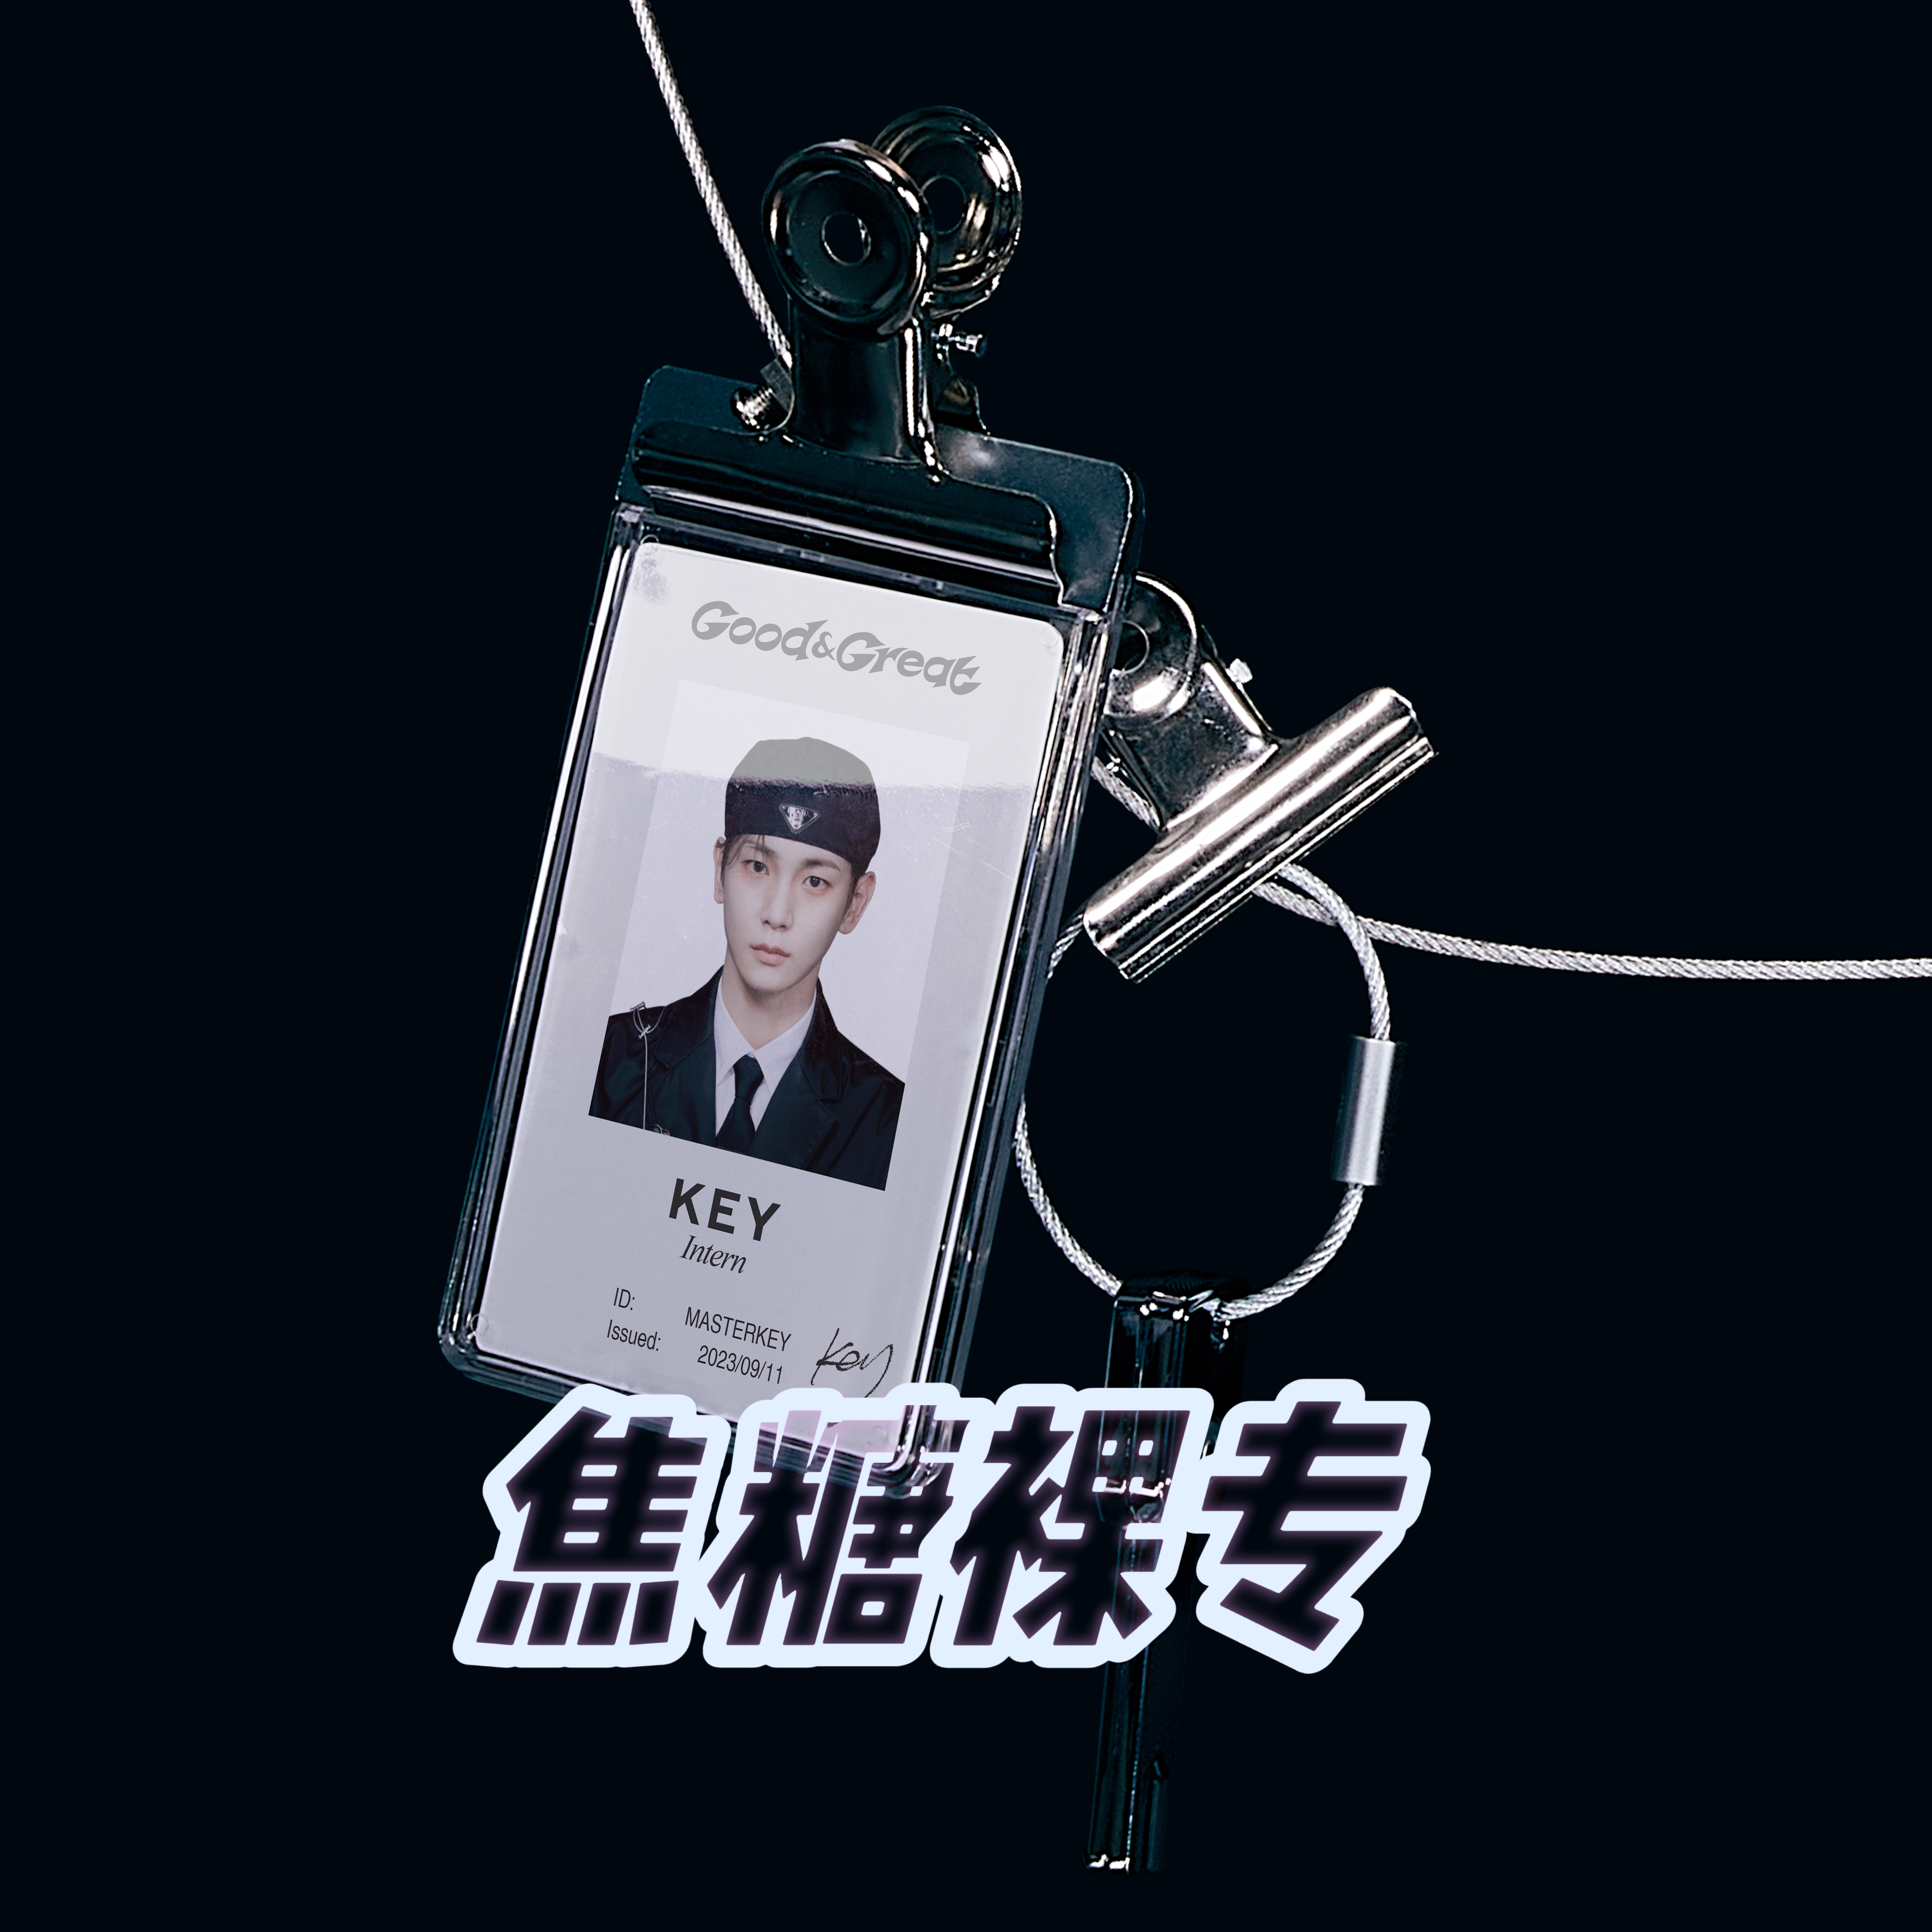 [全款 裸专] Key - 迷你2辑 [Good & Great] (ID Card Ver.) (Smart Album)_SHINEE吧